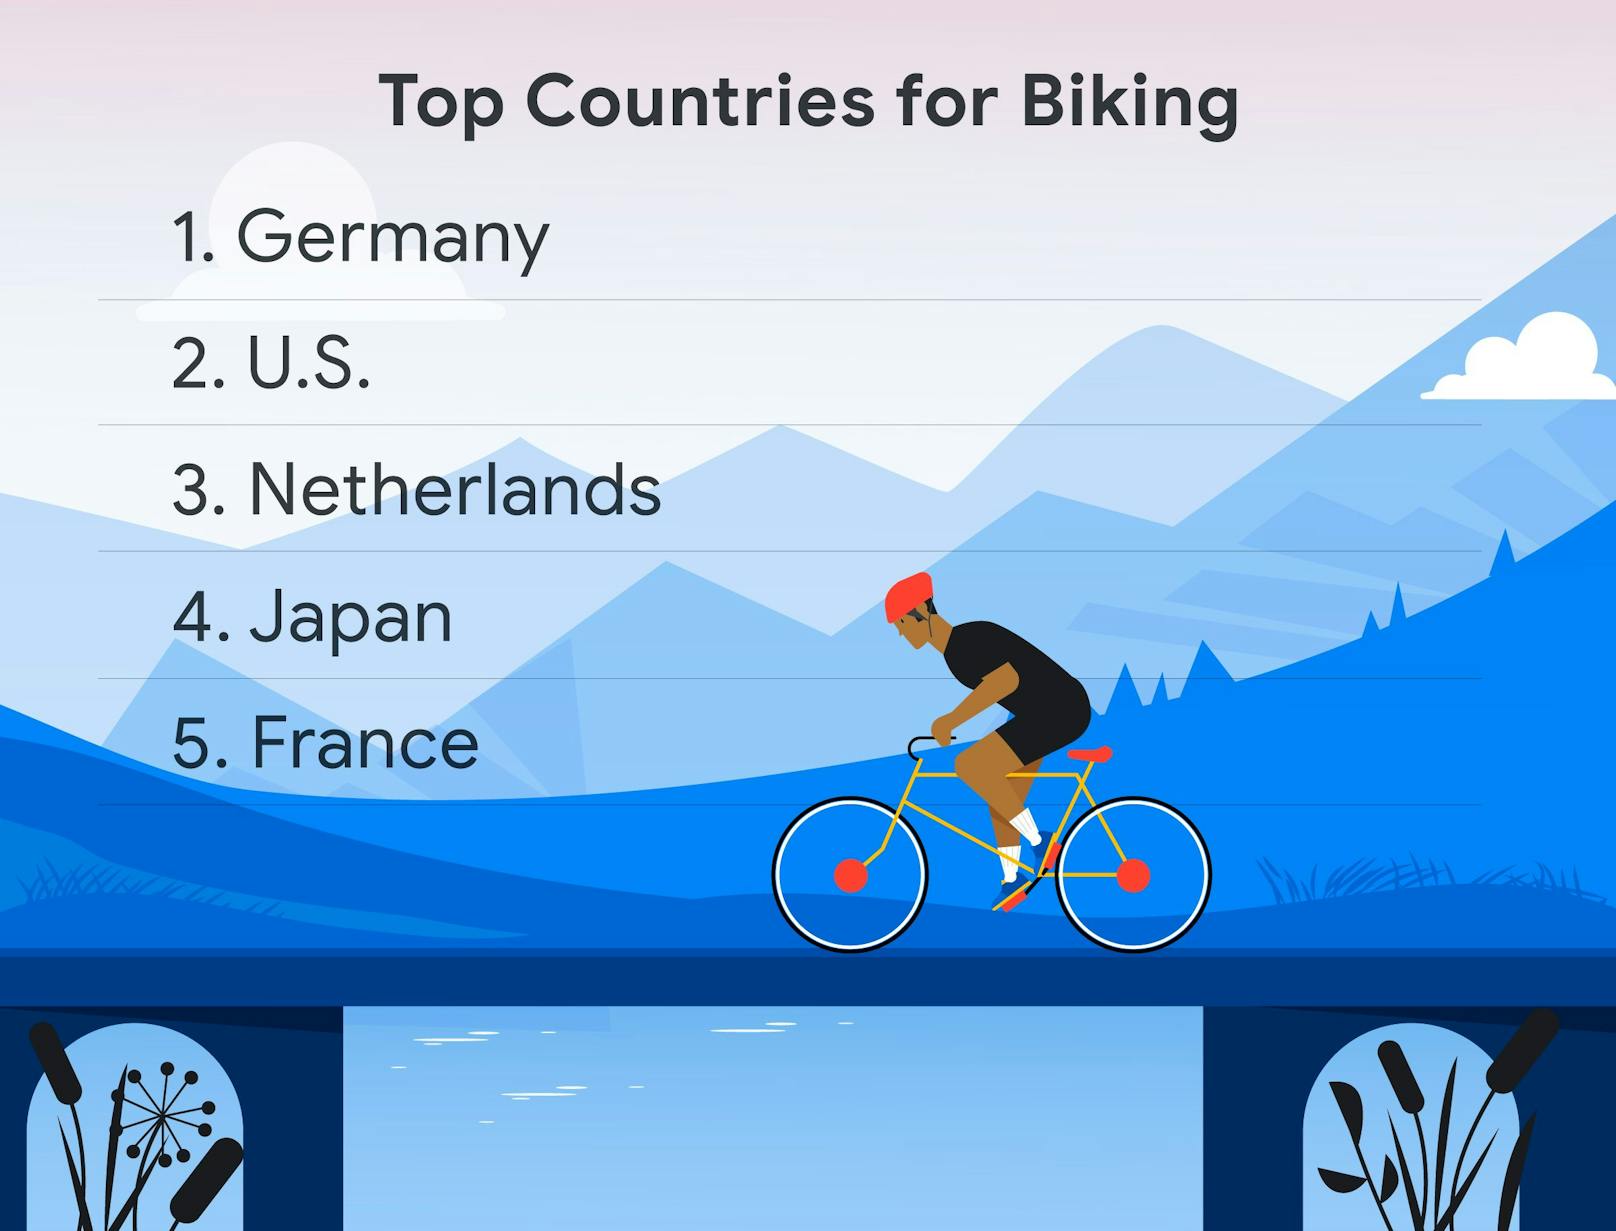 "Seit 2019 ist die Nutzung von Fahrradwegen auf Google Maps hierzulande um 21 Prozent gestiegen", sagt Google. Suchanfragen nach dem Begriff "Fahrrad" haben sich in Österreich im Vergleich zum Vorjahr um 7 Prozent erhöht.